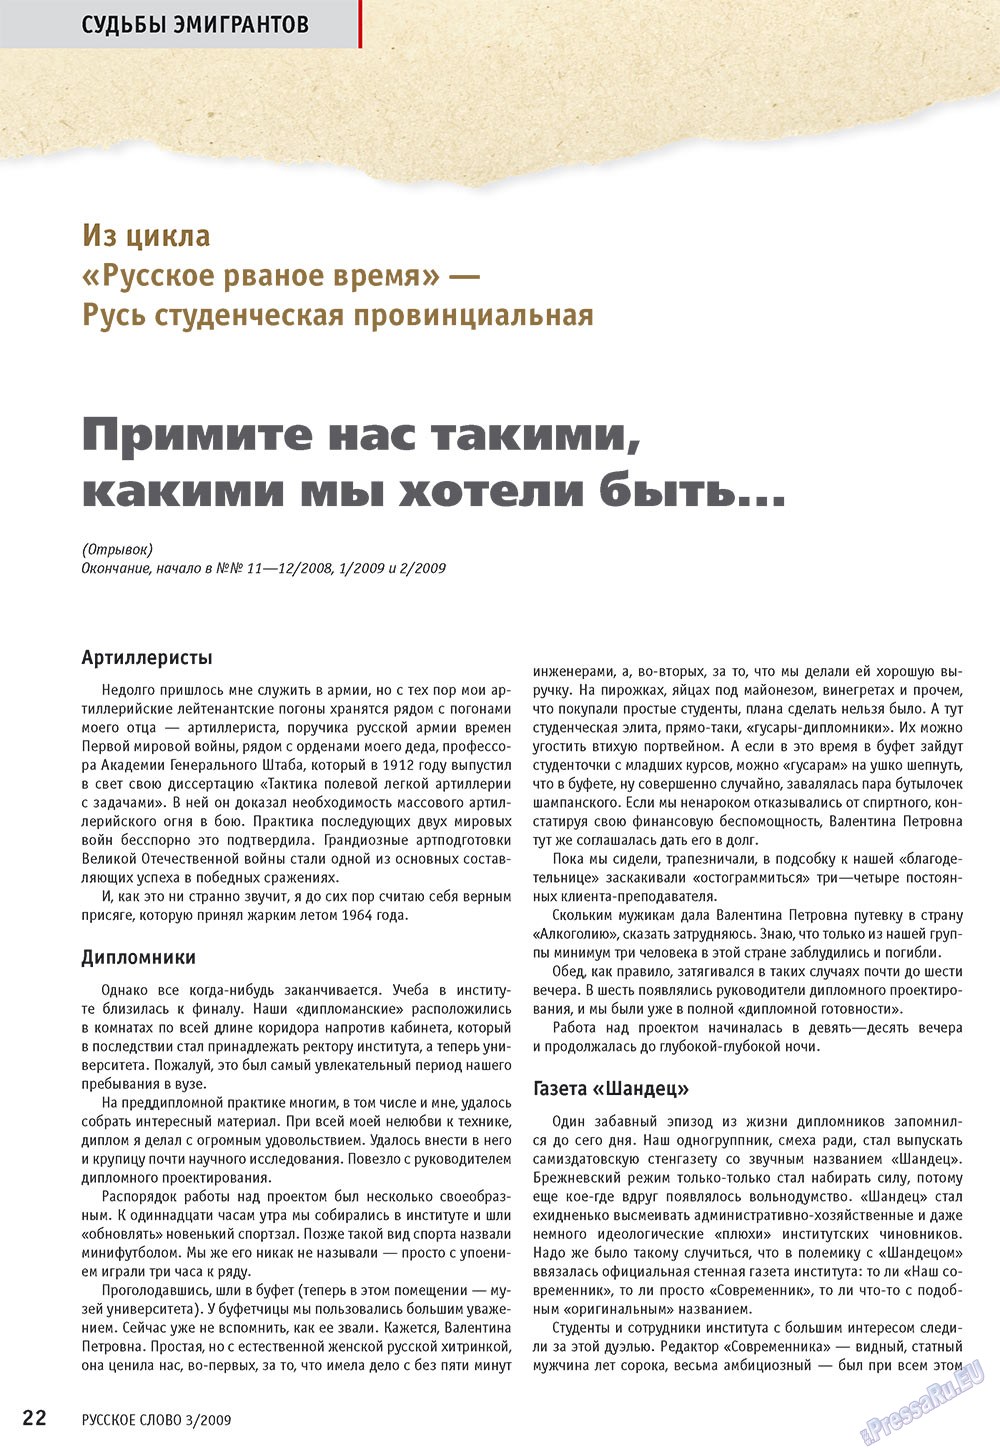 Русское слово, журнал. 2009 №3 стр.24